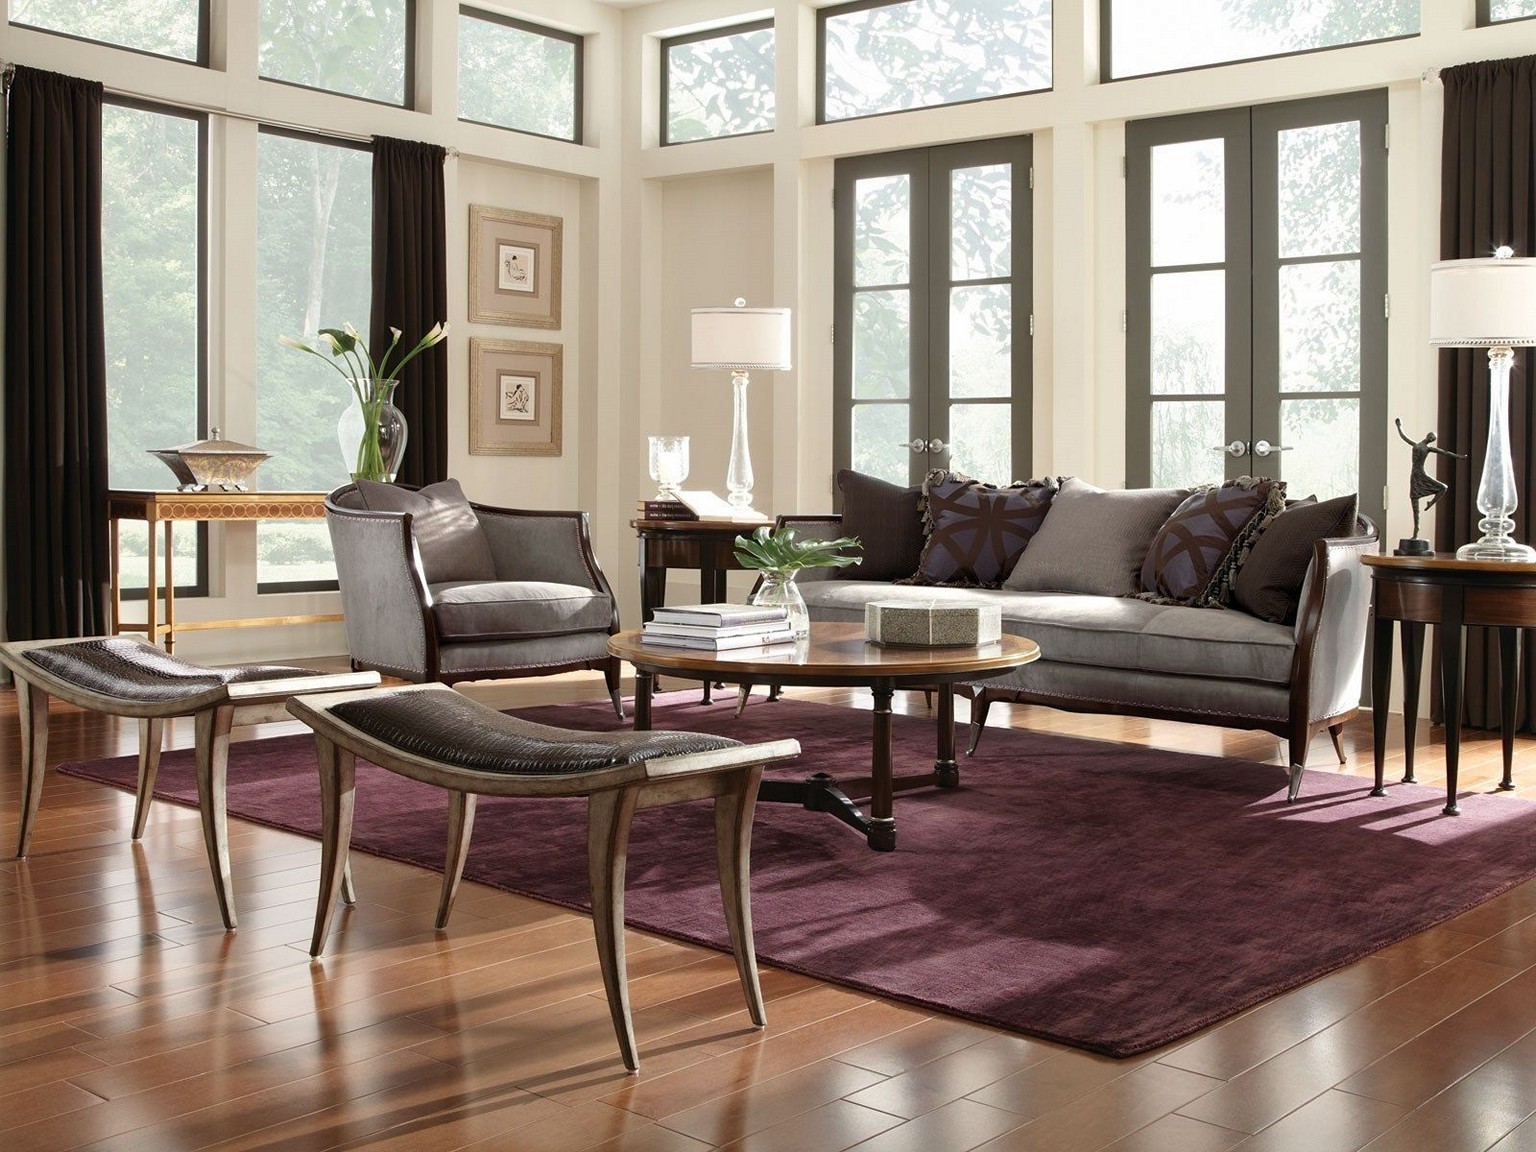 elegant furniture for living room IGKJZET